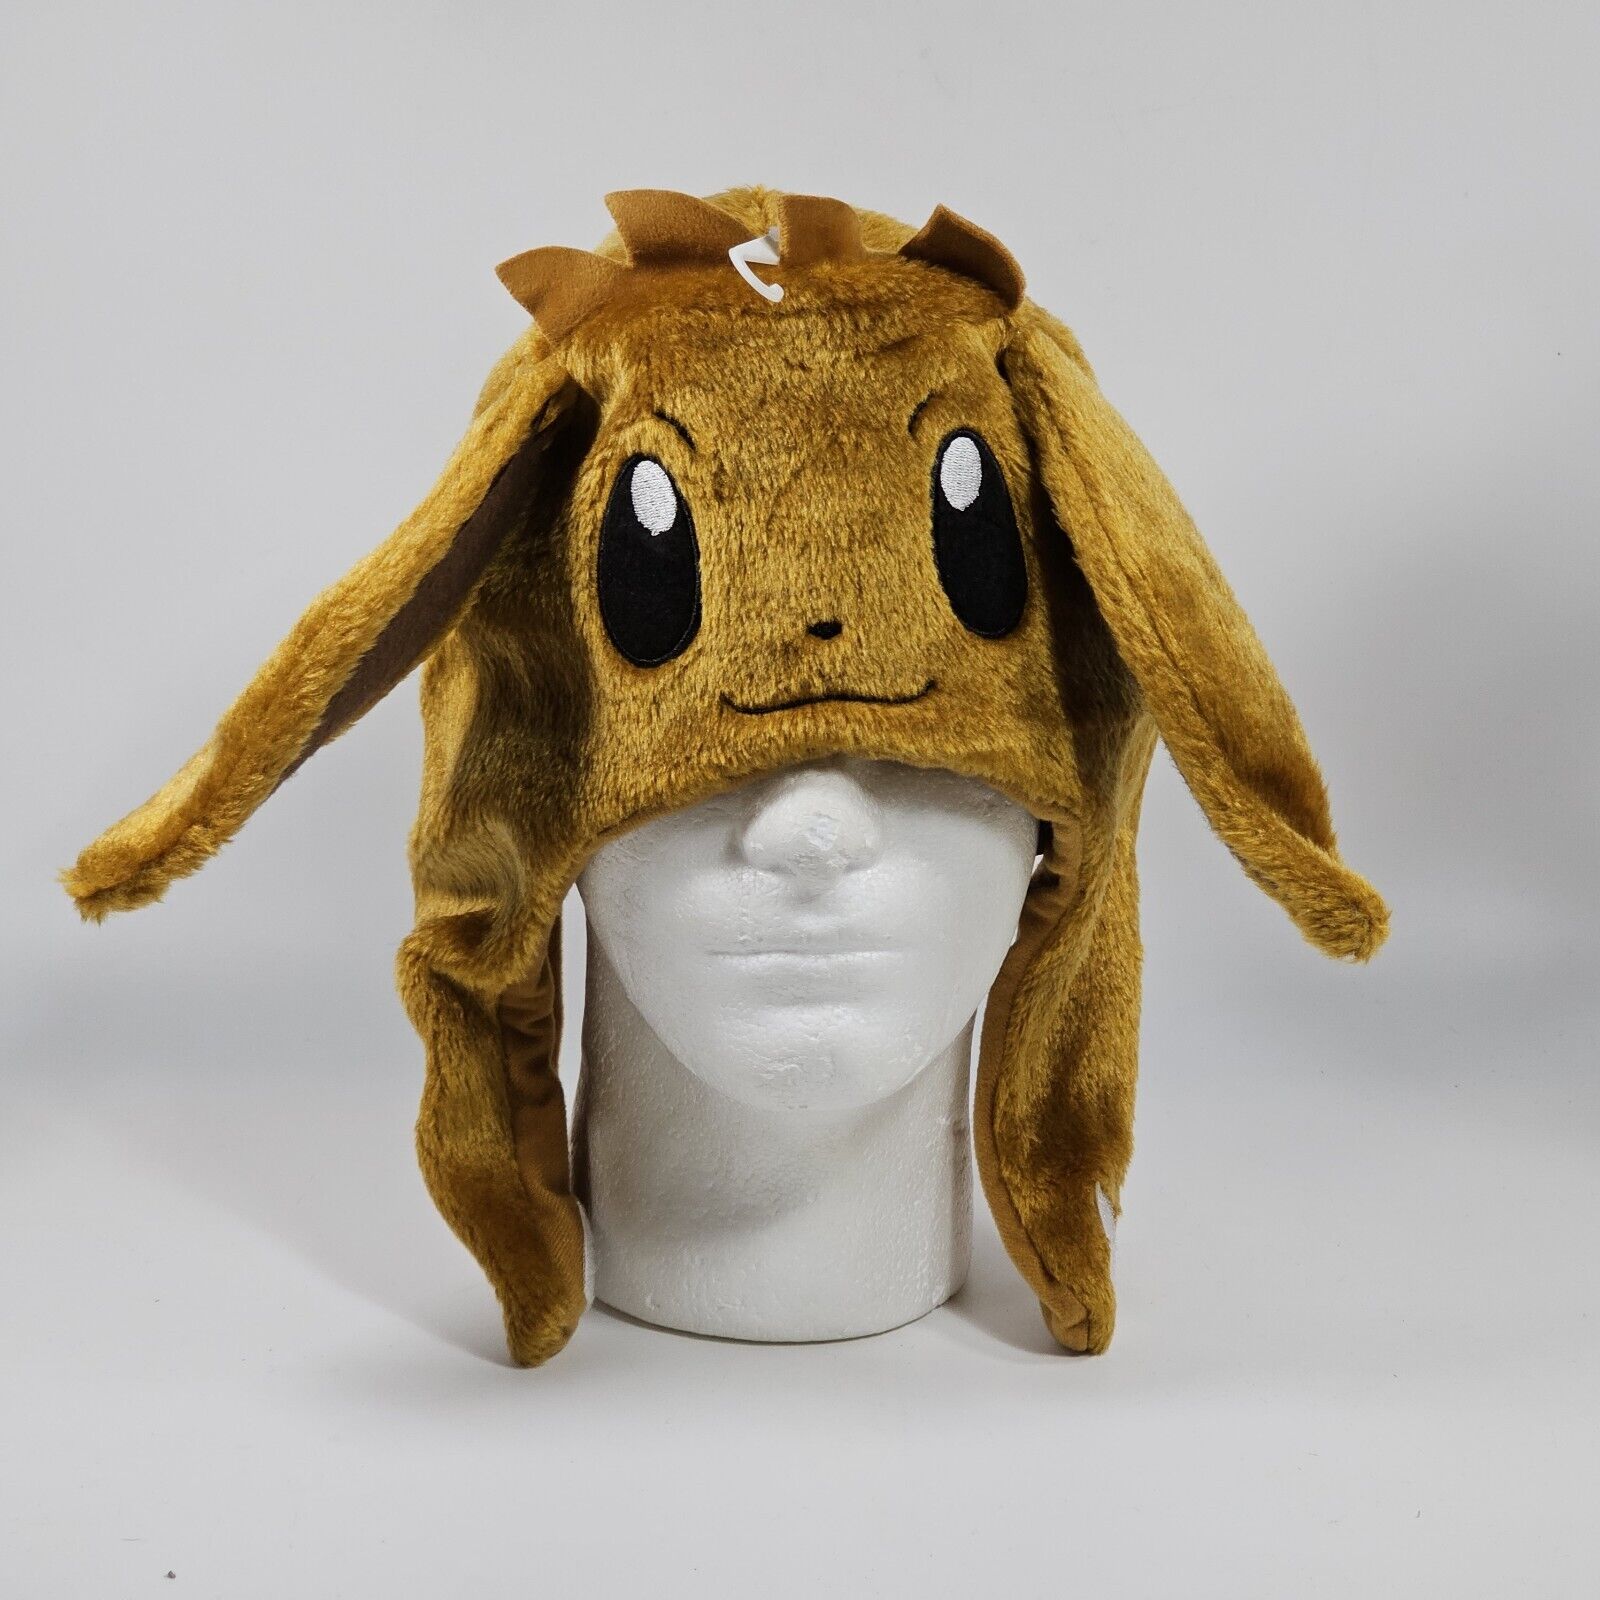 2019 Pokémon Eevee Plush Hat, Cap Adult Size Fits Most